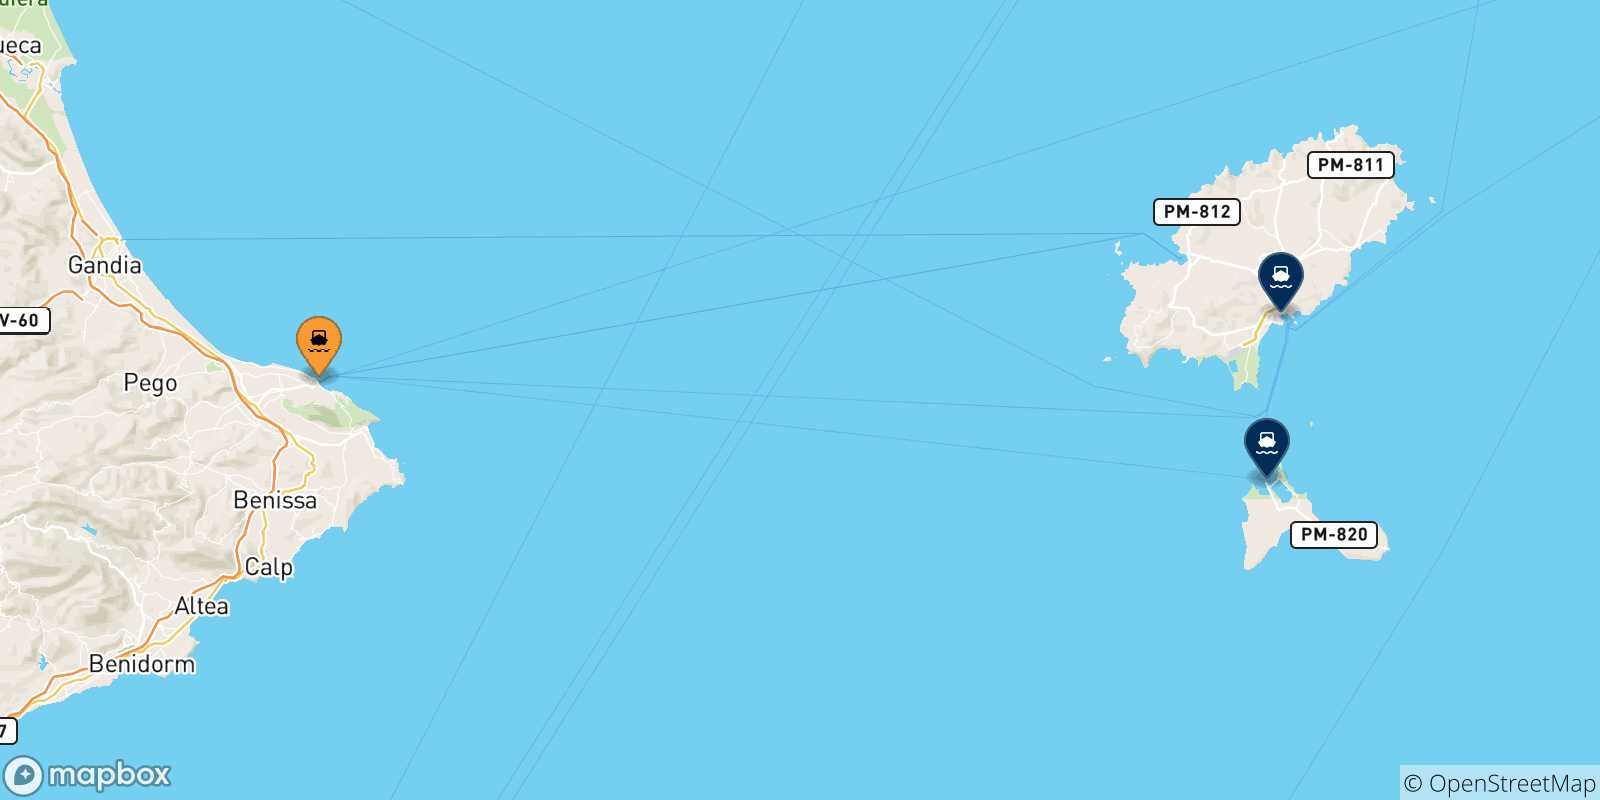 Mappa delle possibili rotte tra Denia e le Isole Baleari